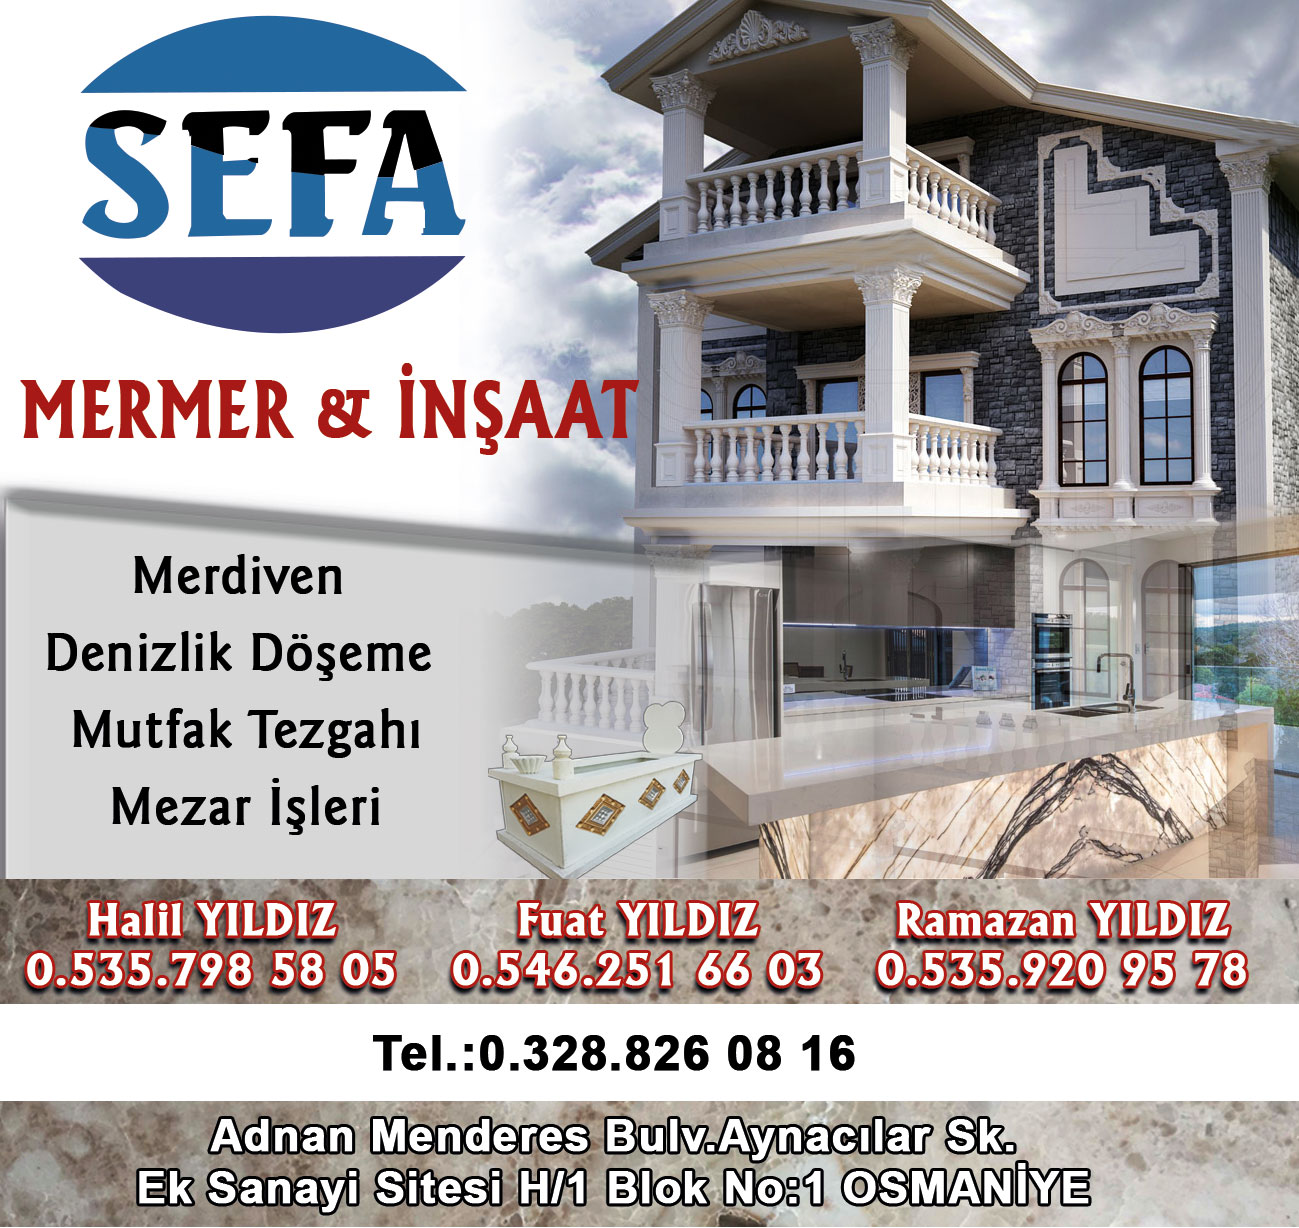 sefa-mermer-insaat-osmaniye